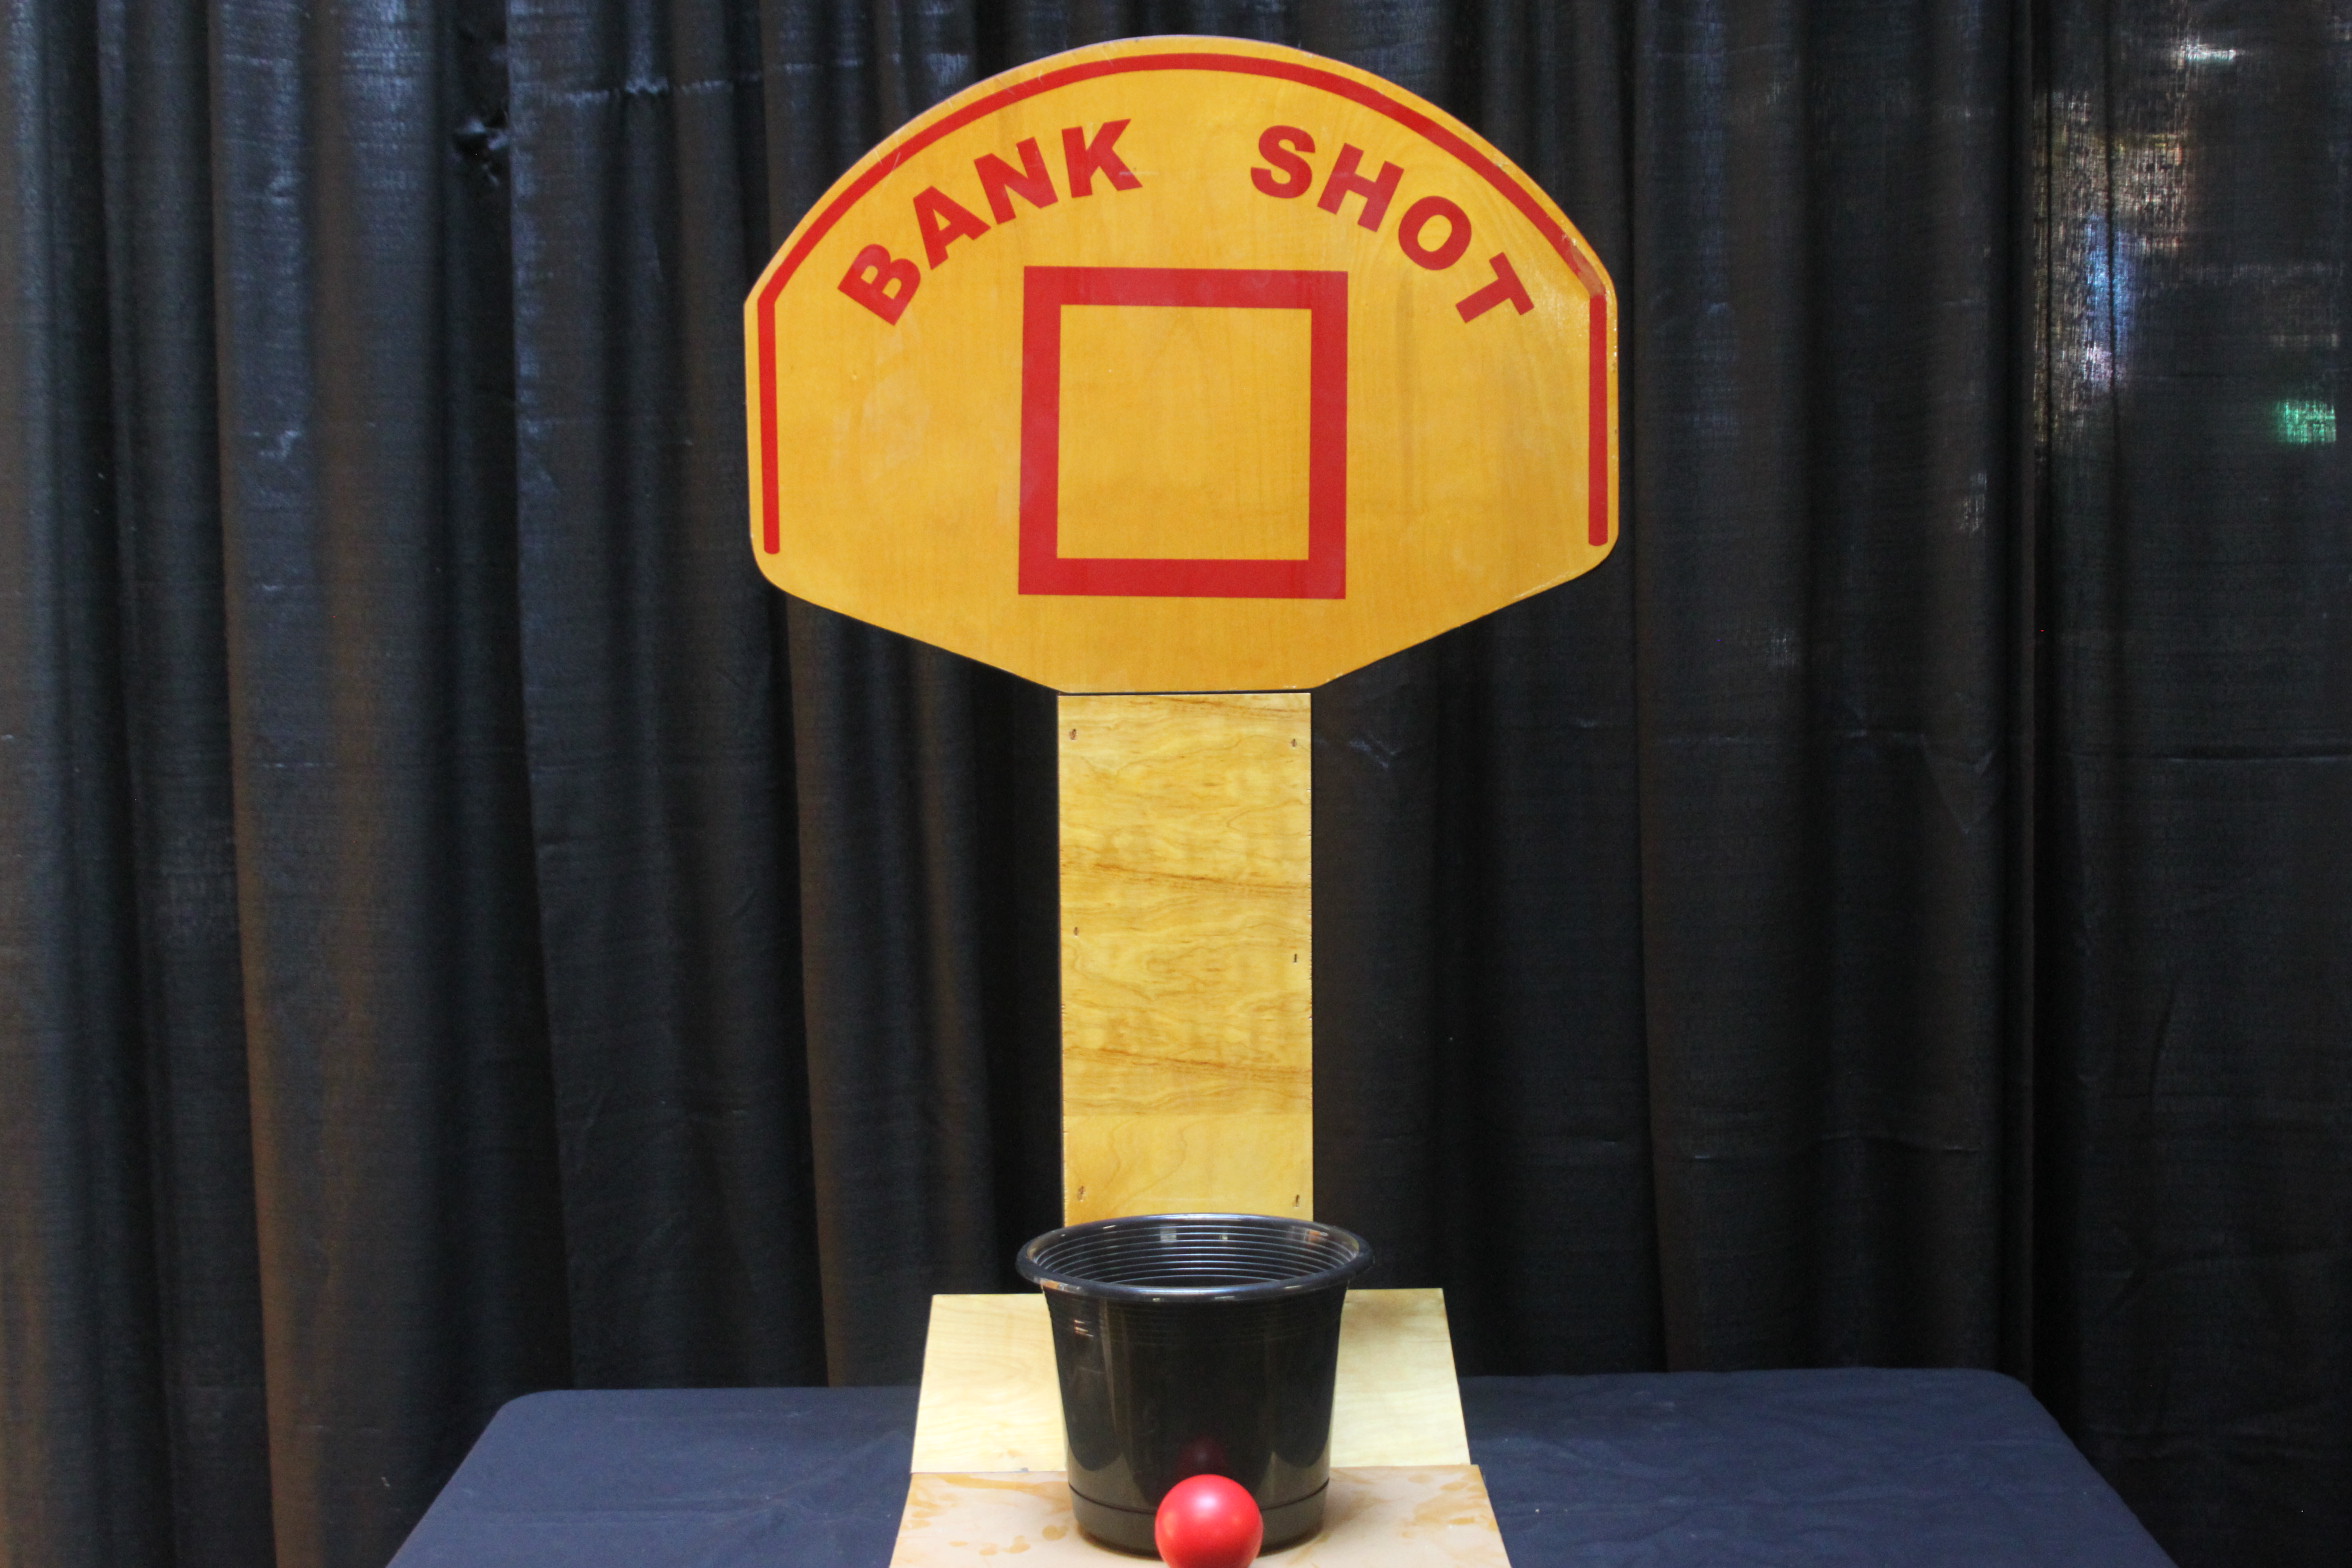 bank shot.jpg